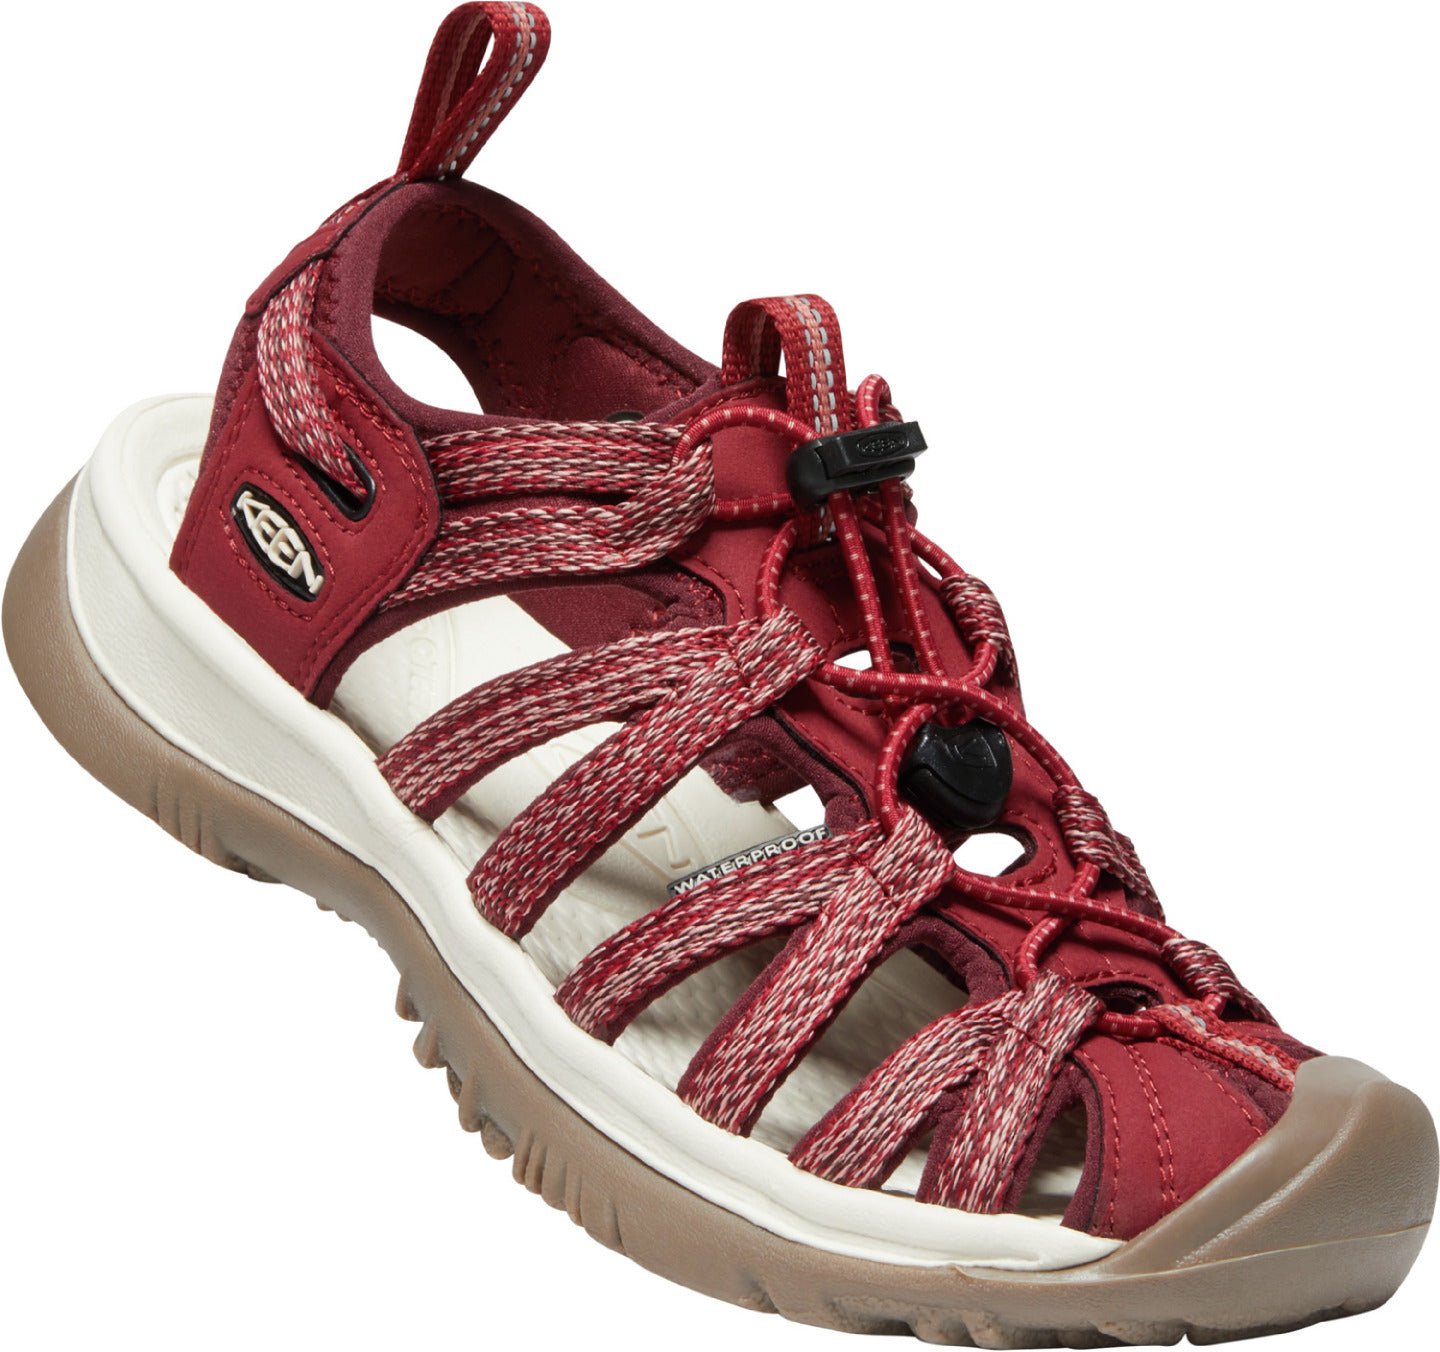 Keen Women's Whisper Sandal Red - Grady’s Feet Essentials - Keen